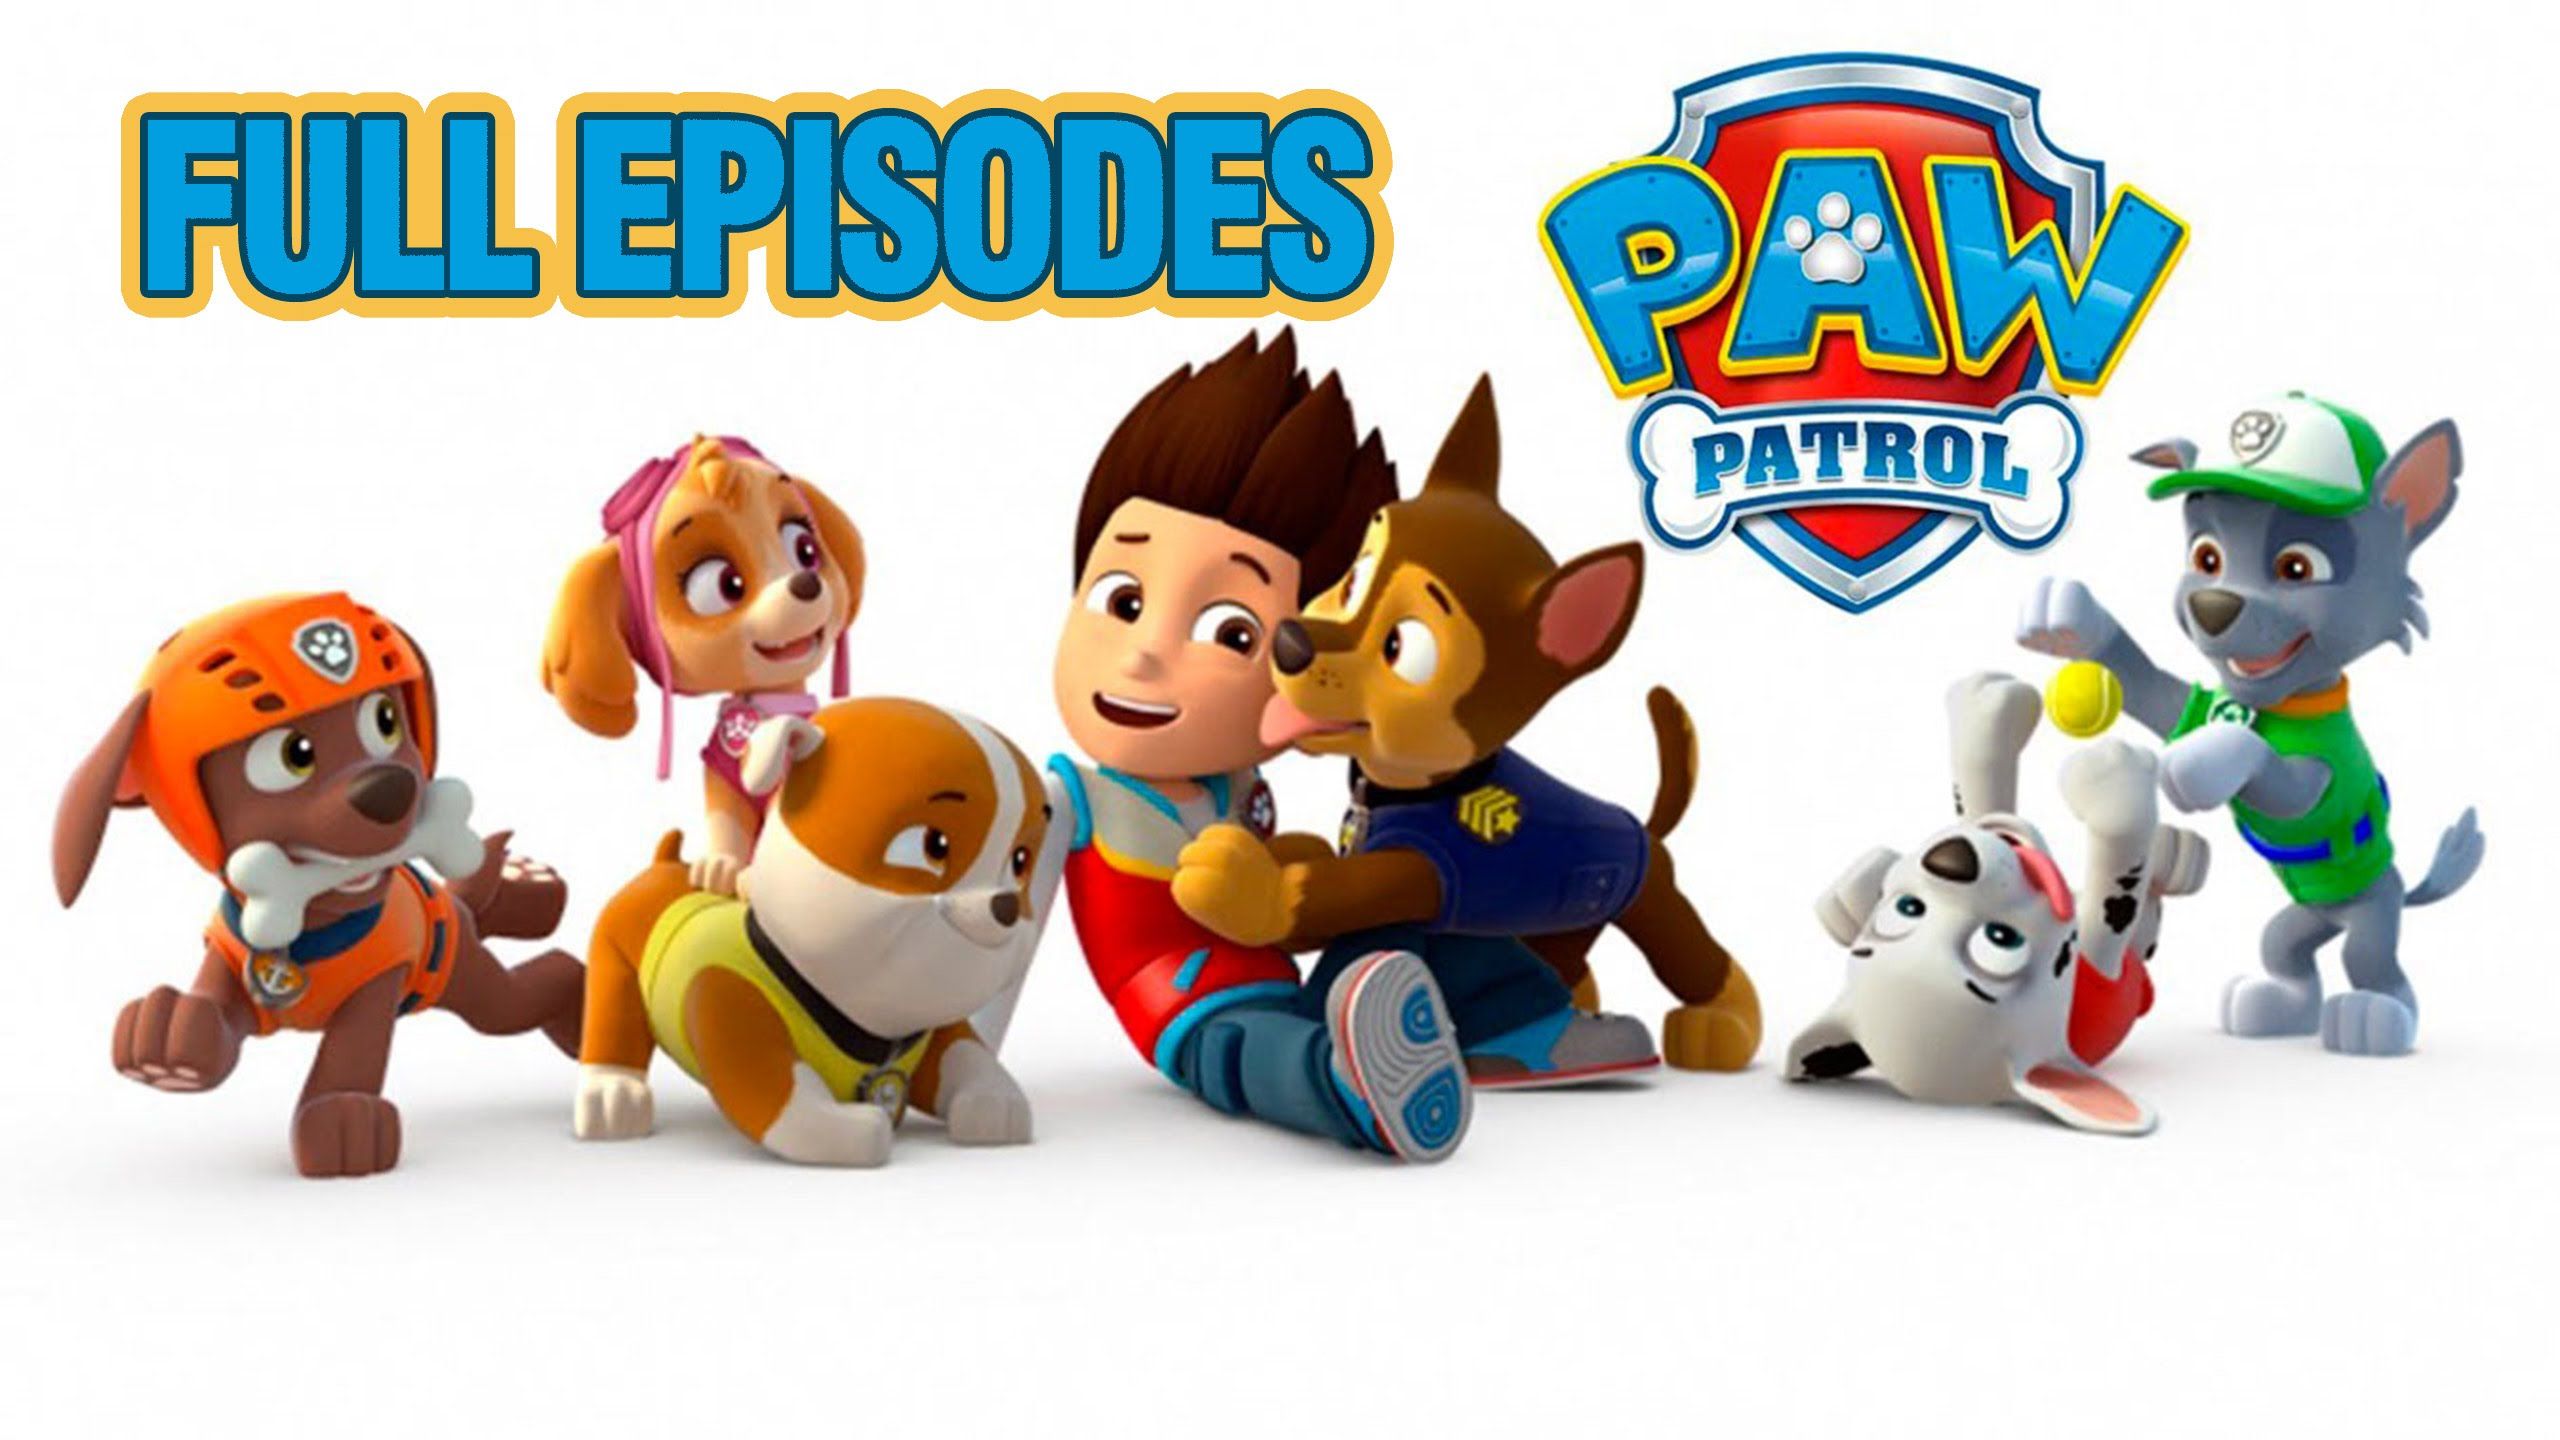 Paw Patrol Image - descarga HD en digitalimagemakerworld.com sin cargo